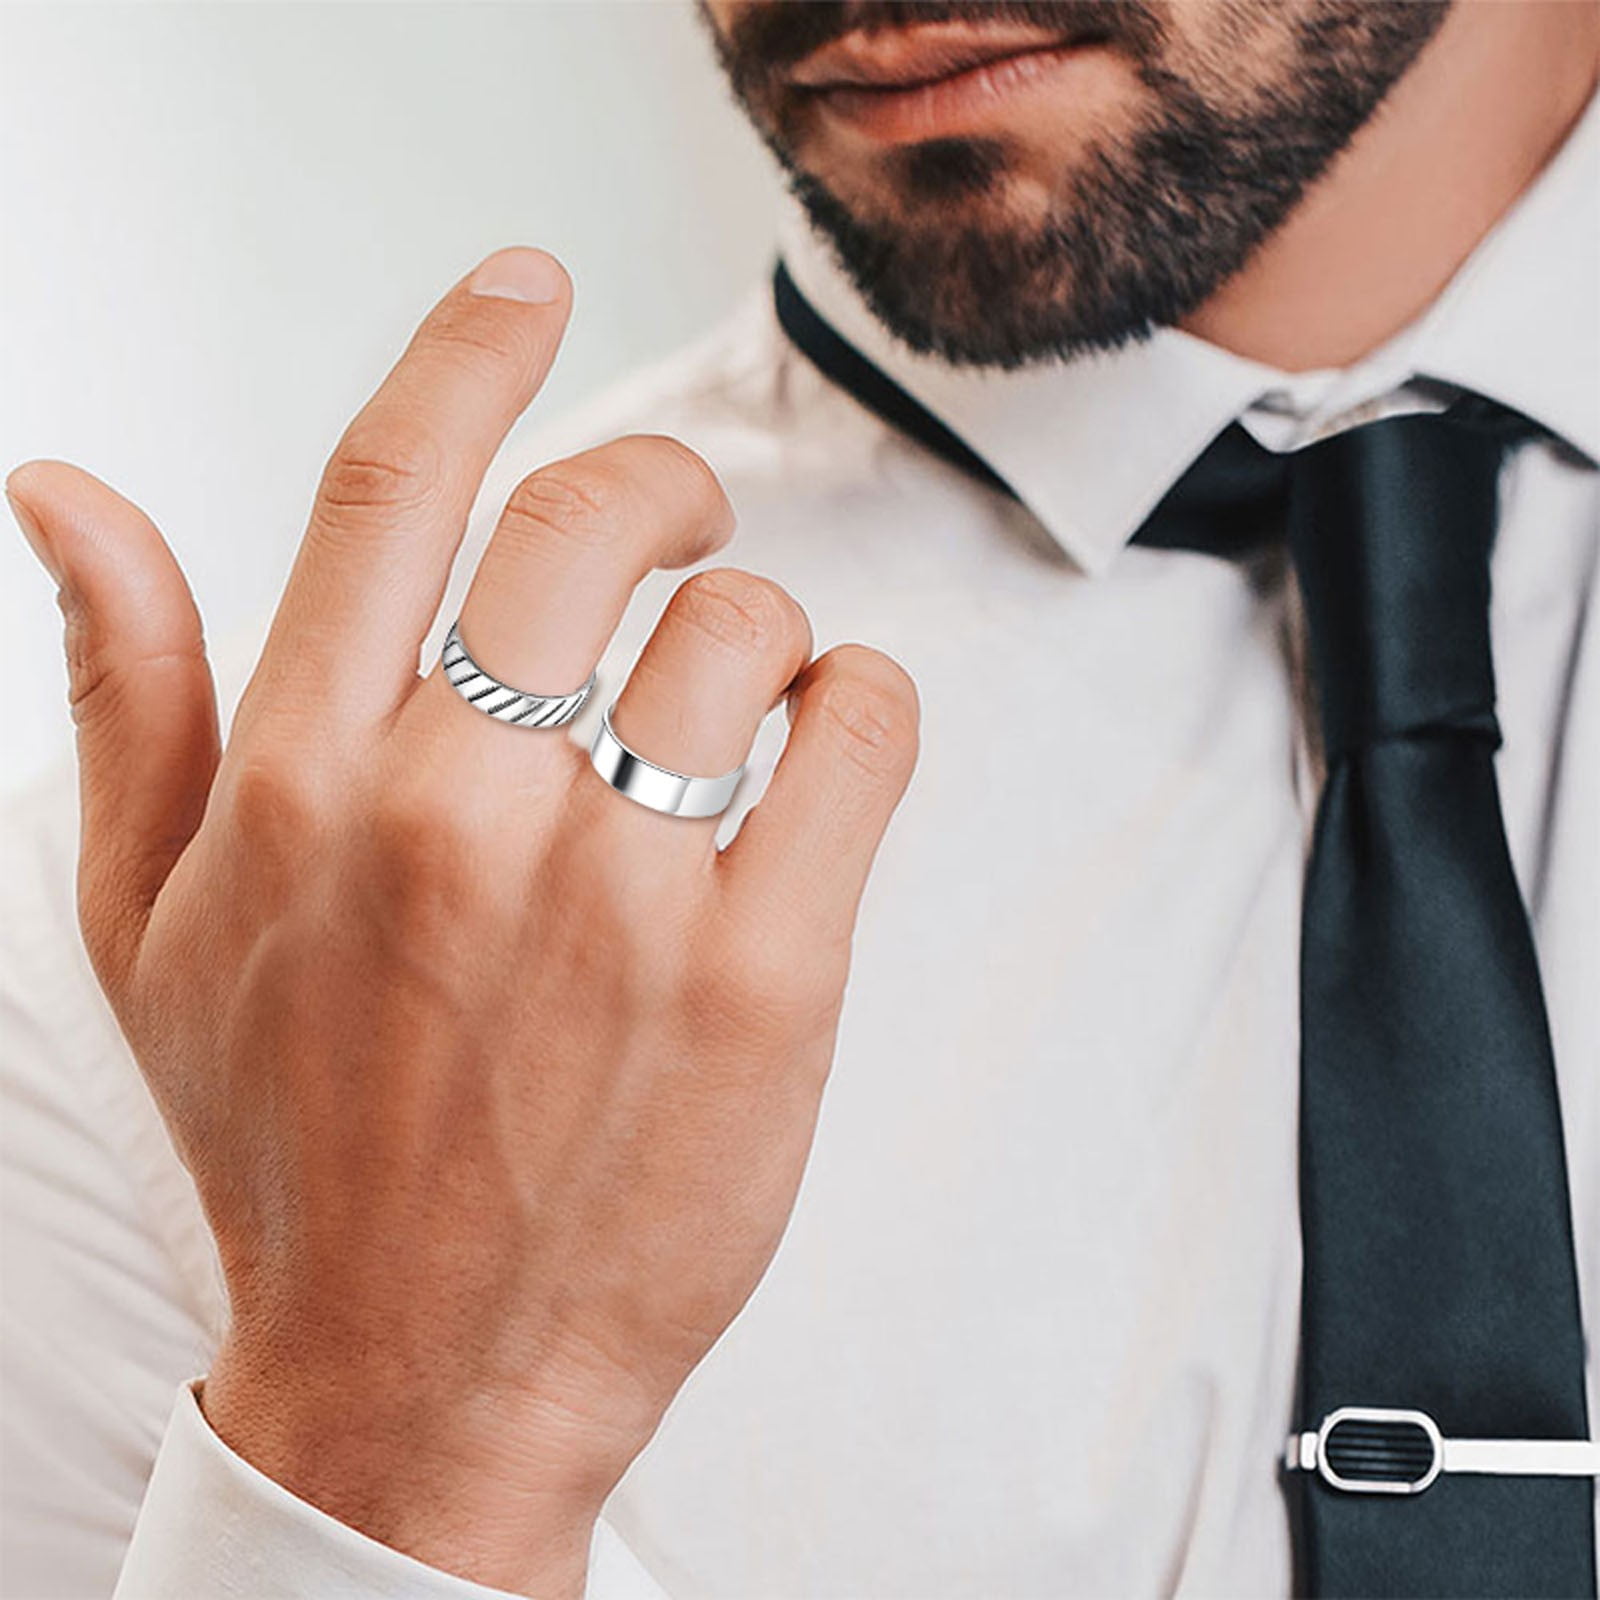 Wedding Ring Finger Men Images - Free Download on Freepik